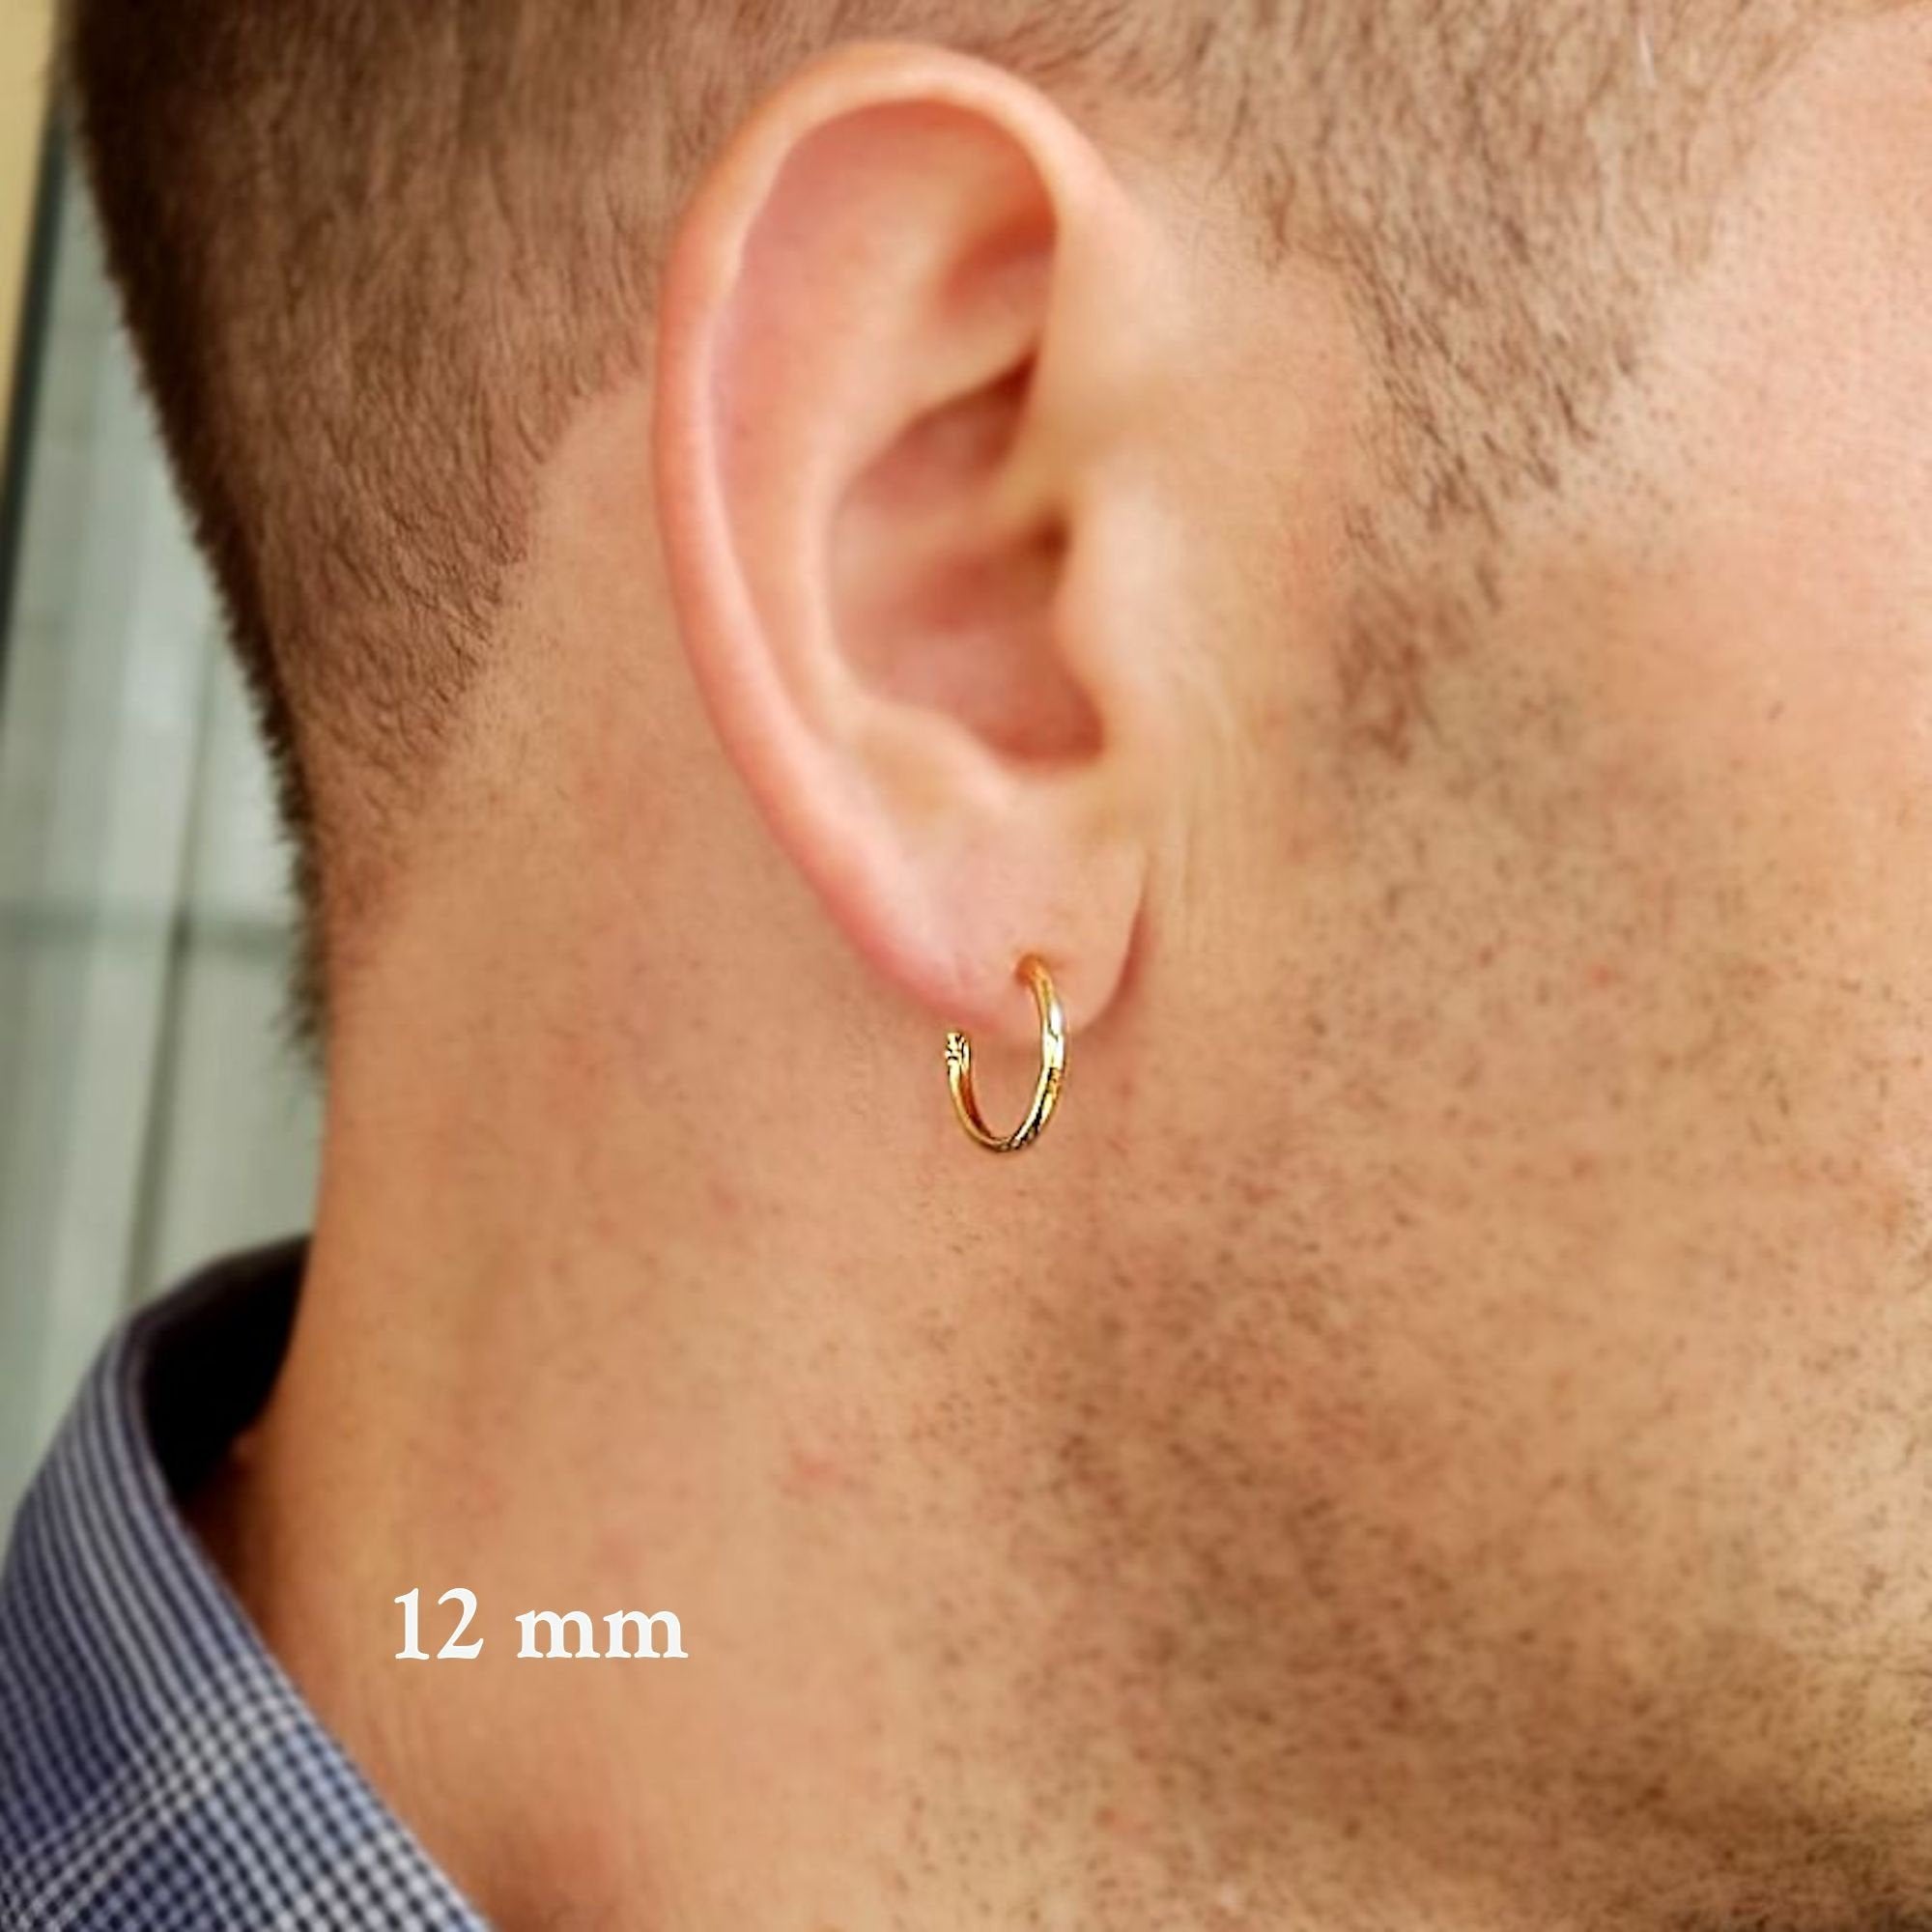 Mens Hoop Earrings - Sterling Silver Mens Earrings 10mm / Gold Filled